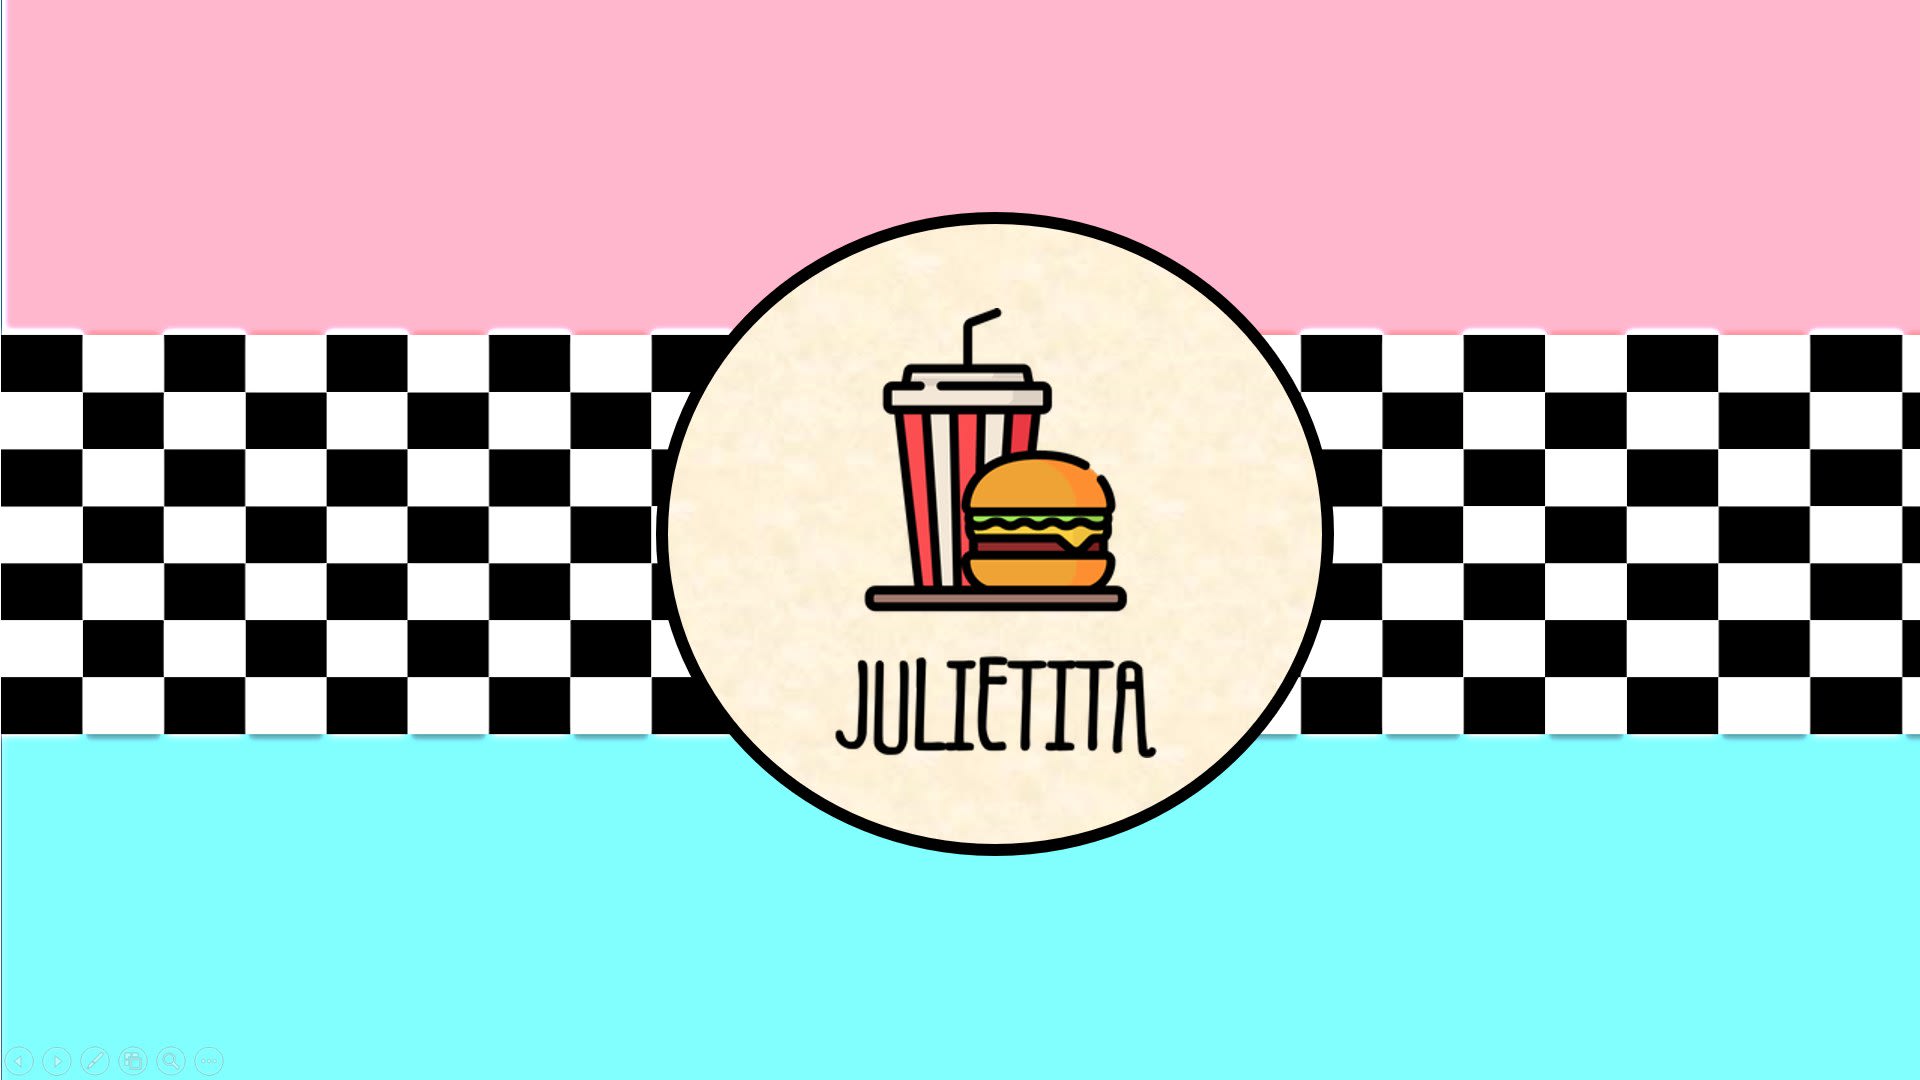 Julietita